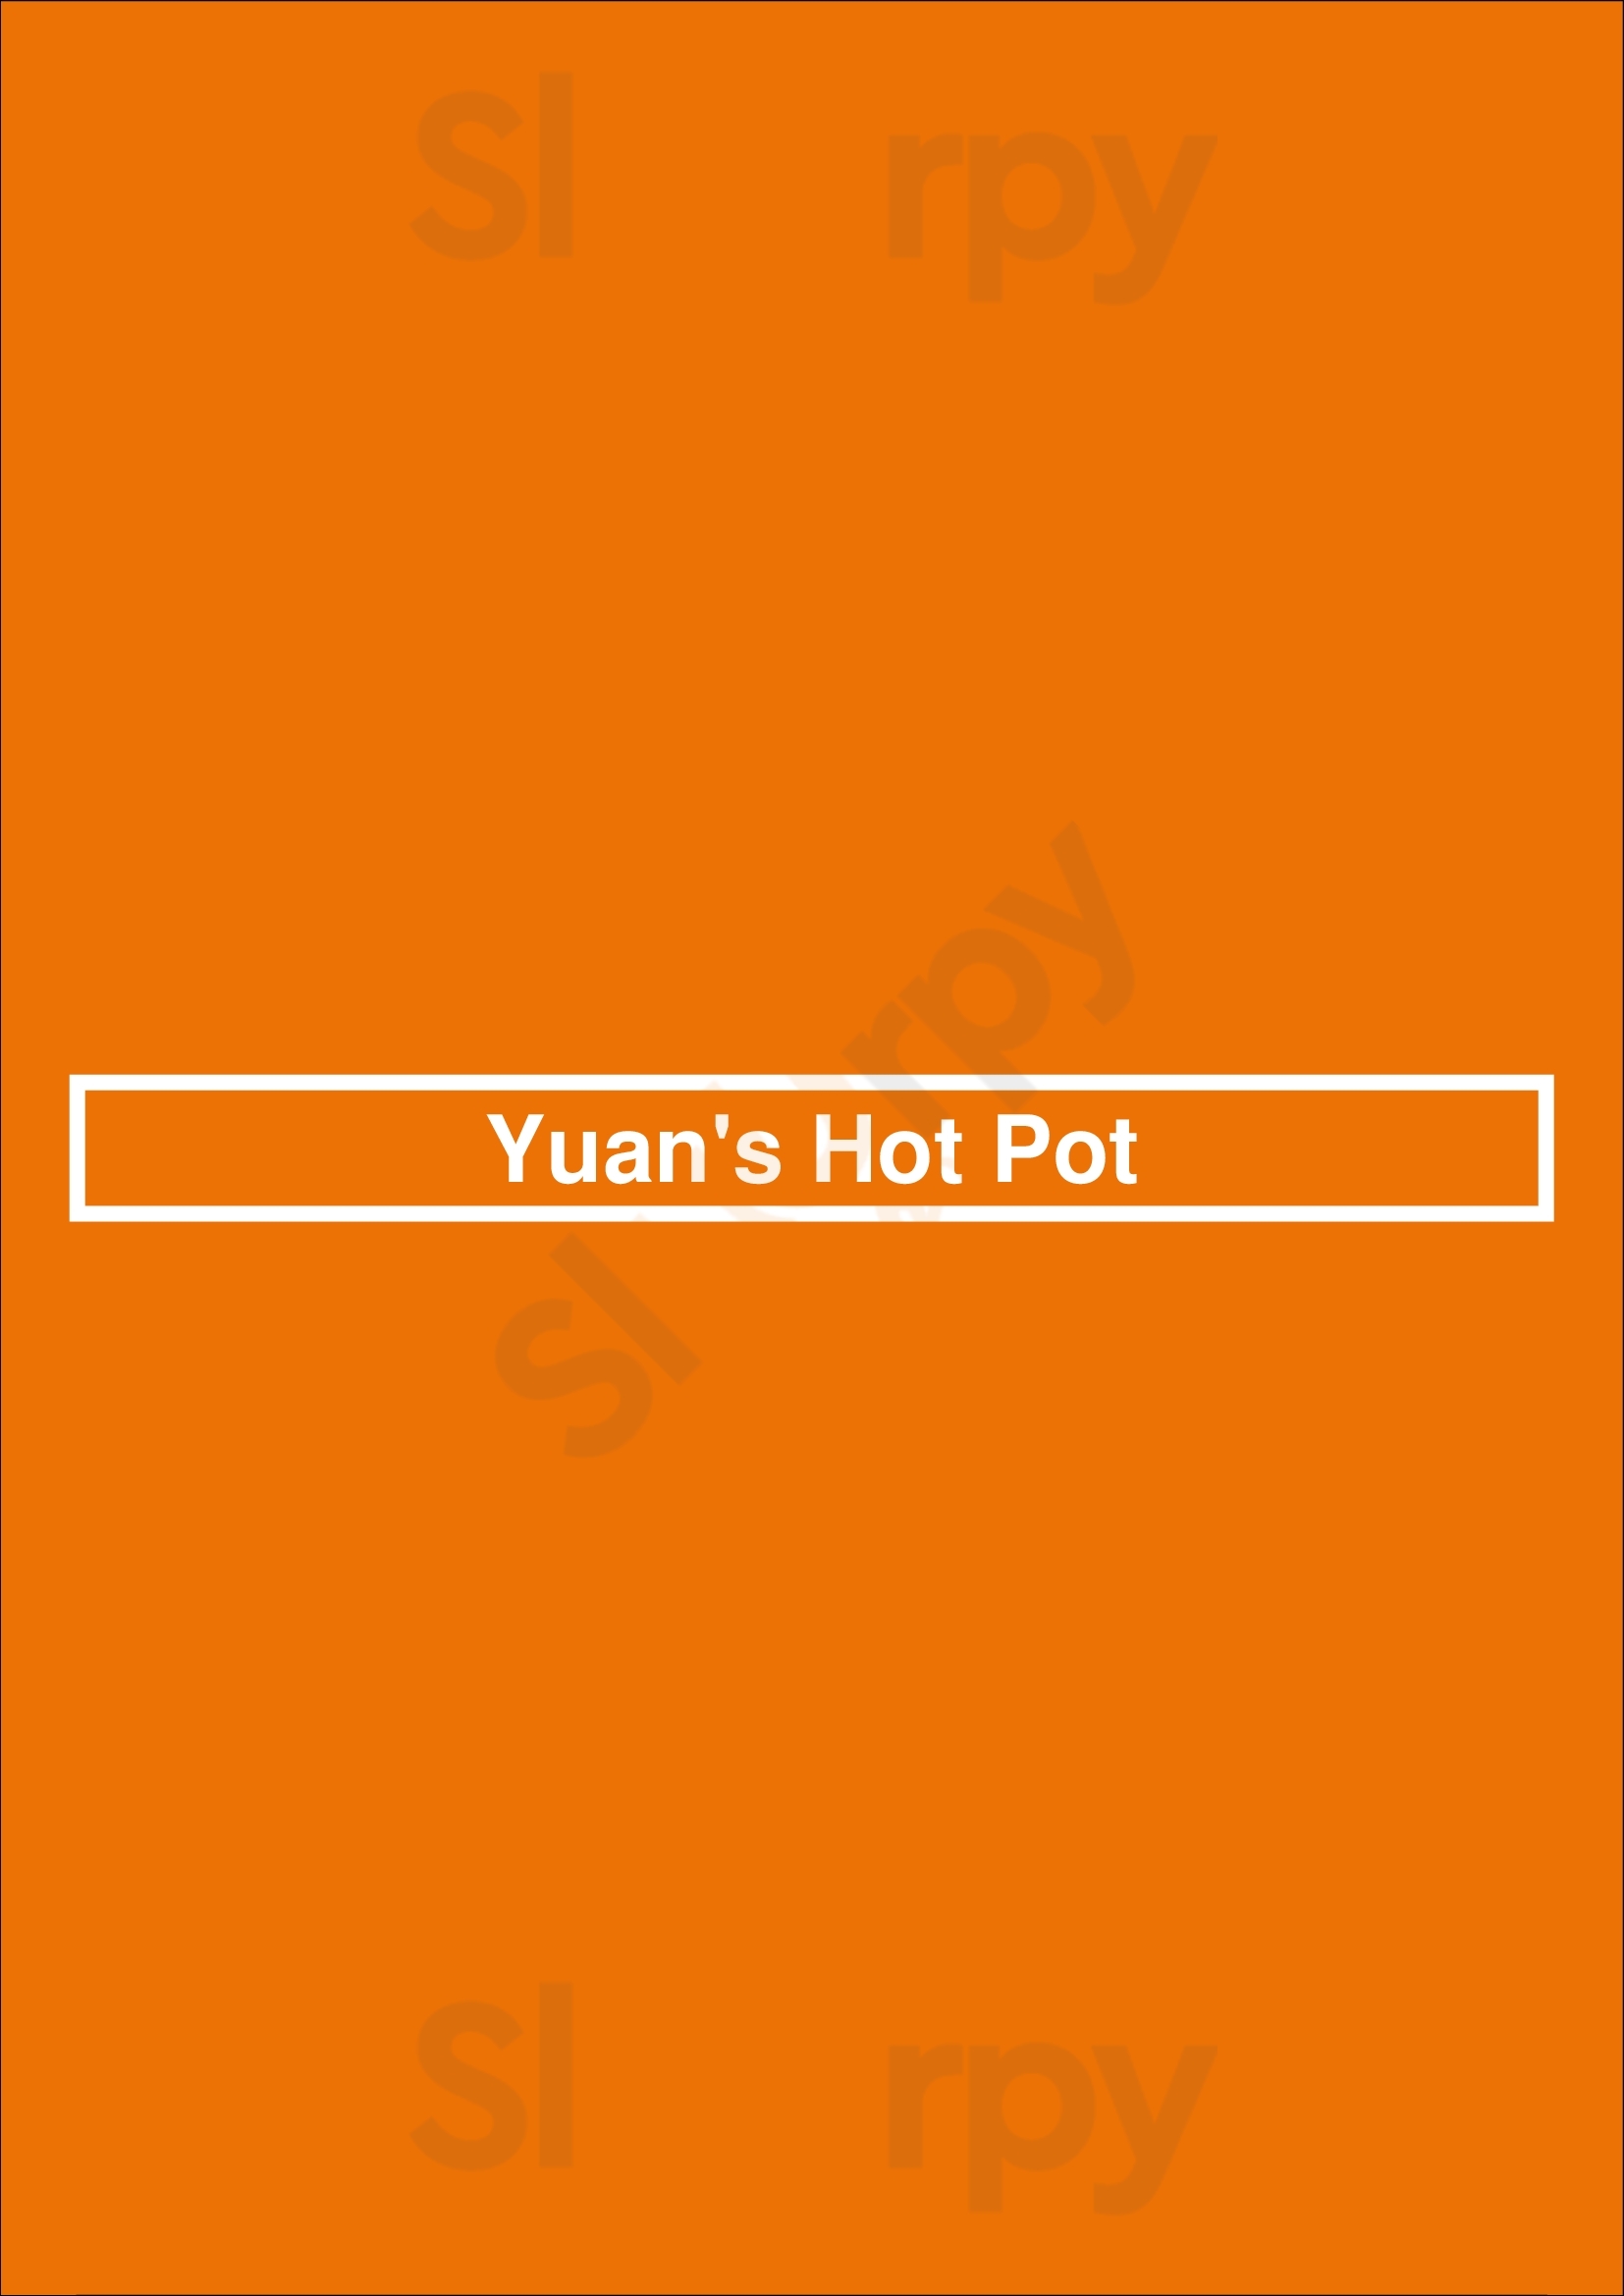 Yuan's Hot Pot Amsterdam Menu - 1